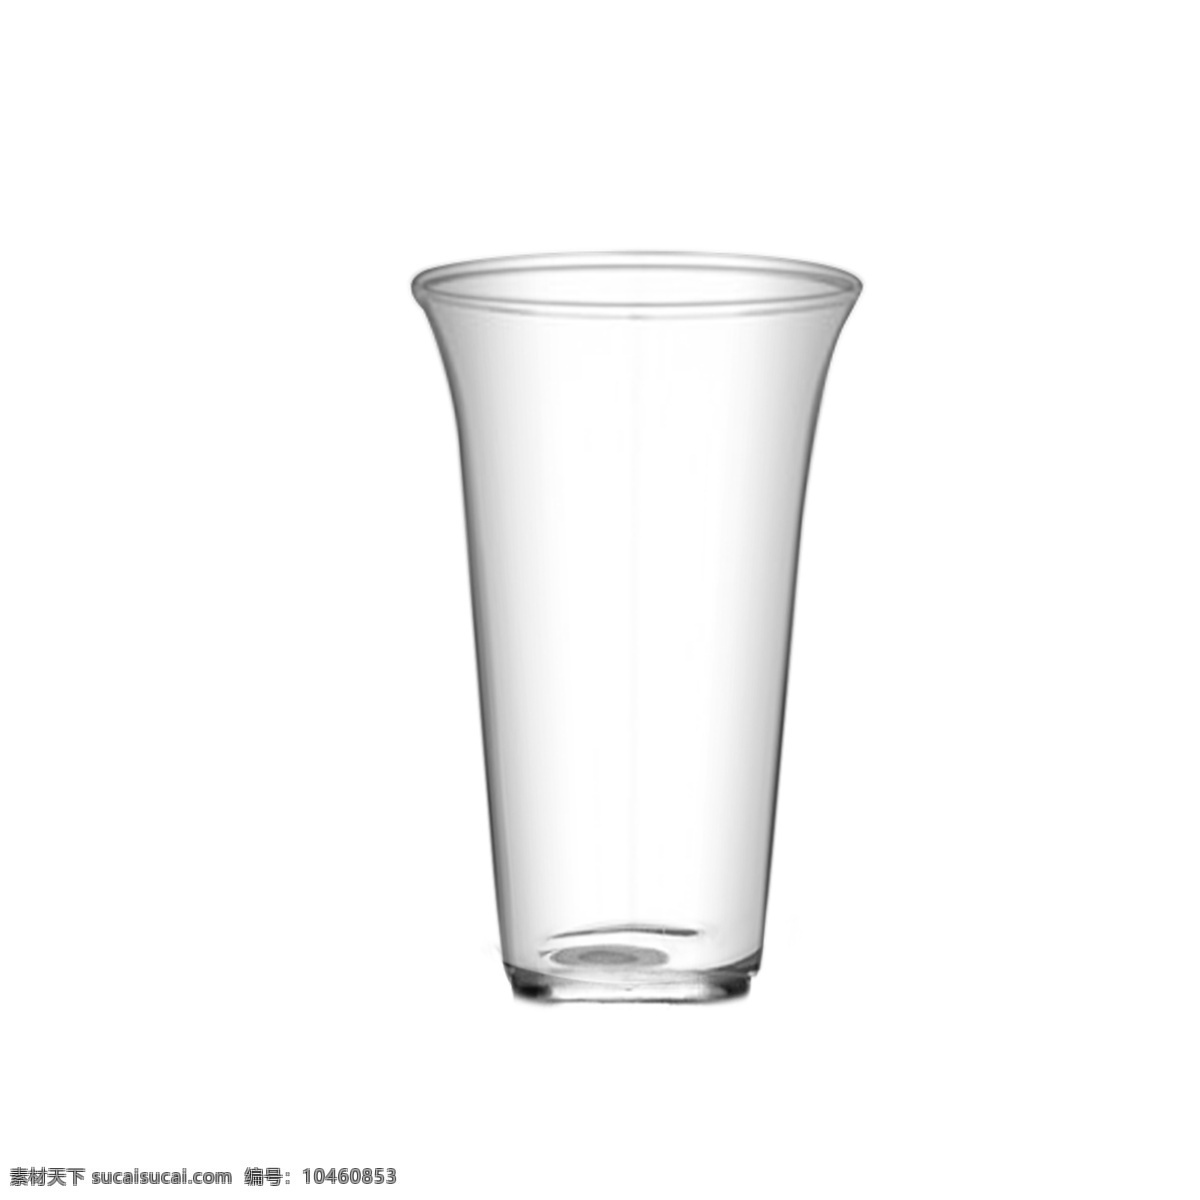 酒杯 实物 调 分 酒器 玻璃杯 酒杯实物 调酒杯 分酒器 白酒玻璃杯 透明杯子 烈酒杯 白酒杯子 平底透明杯